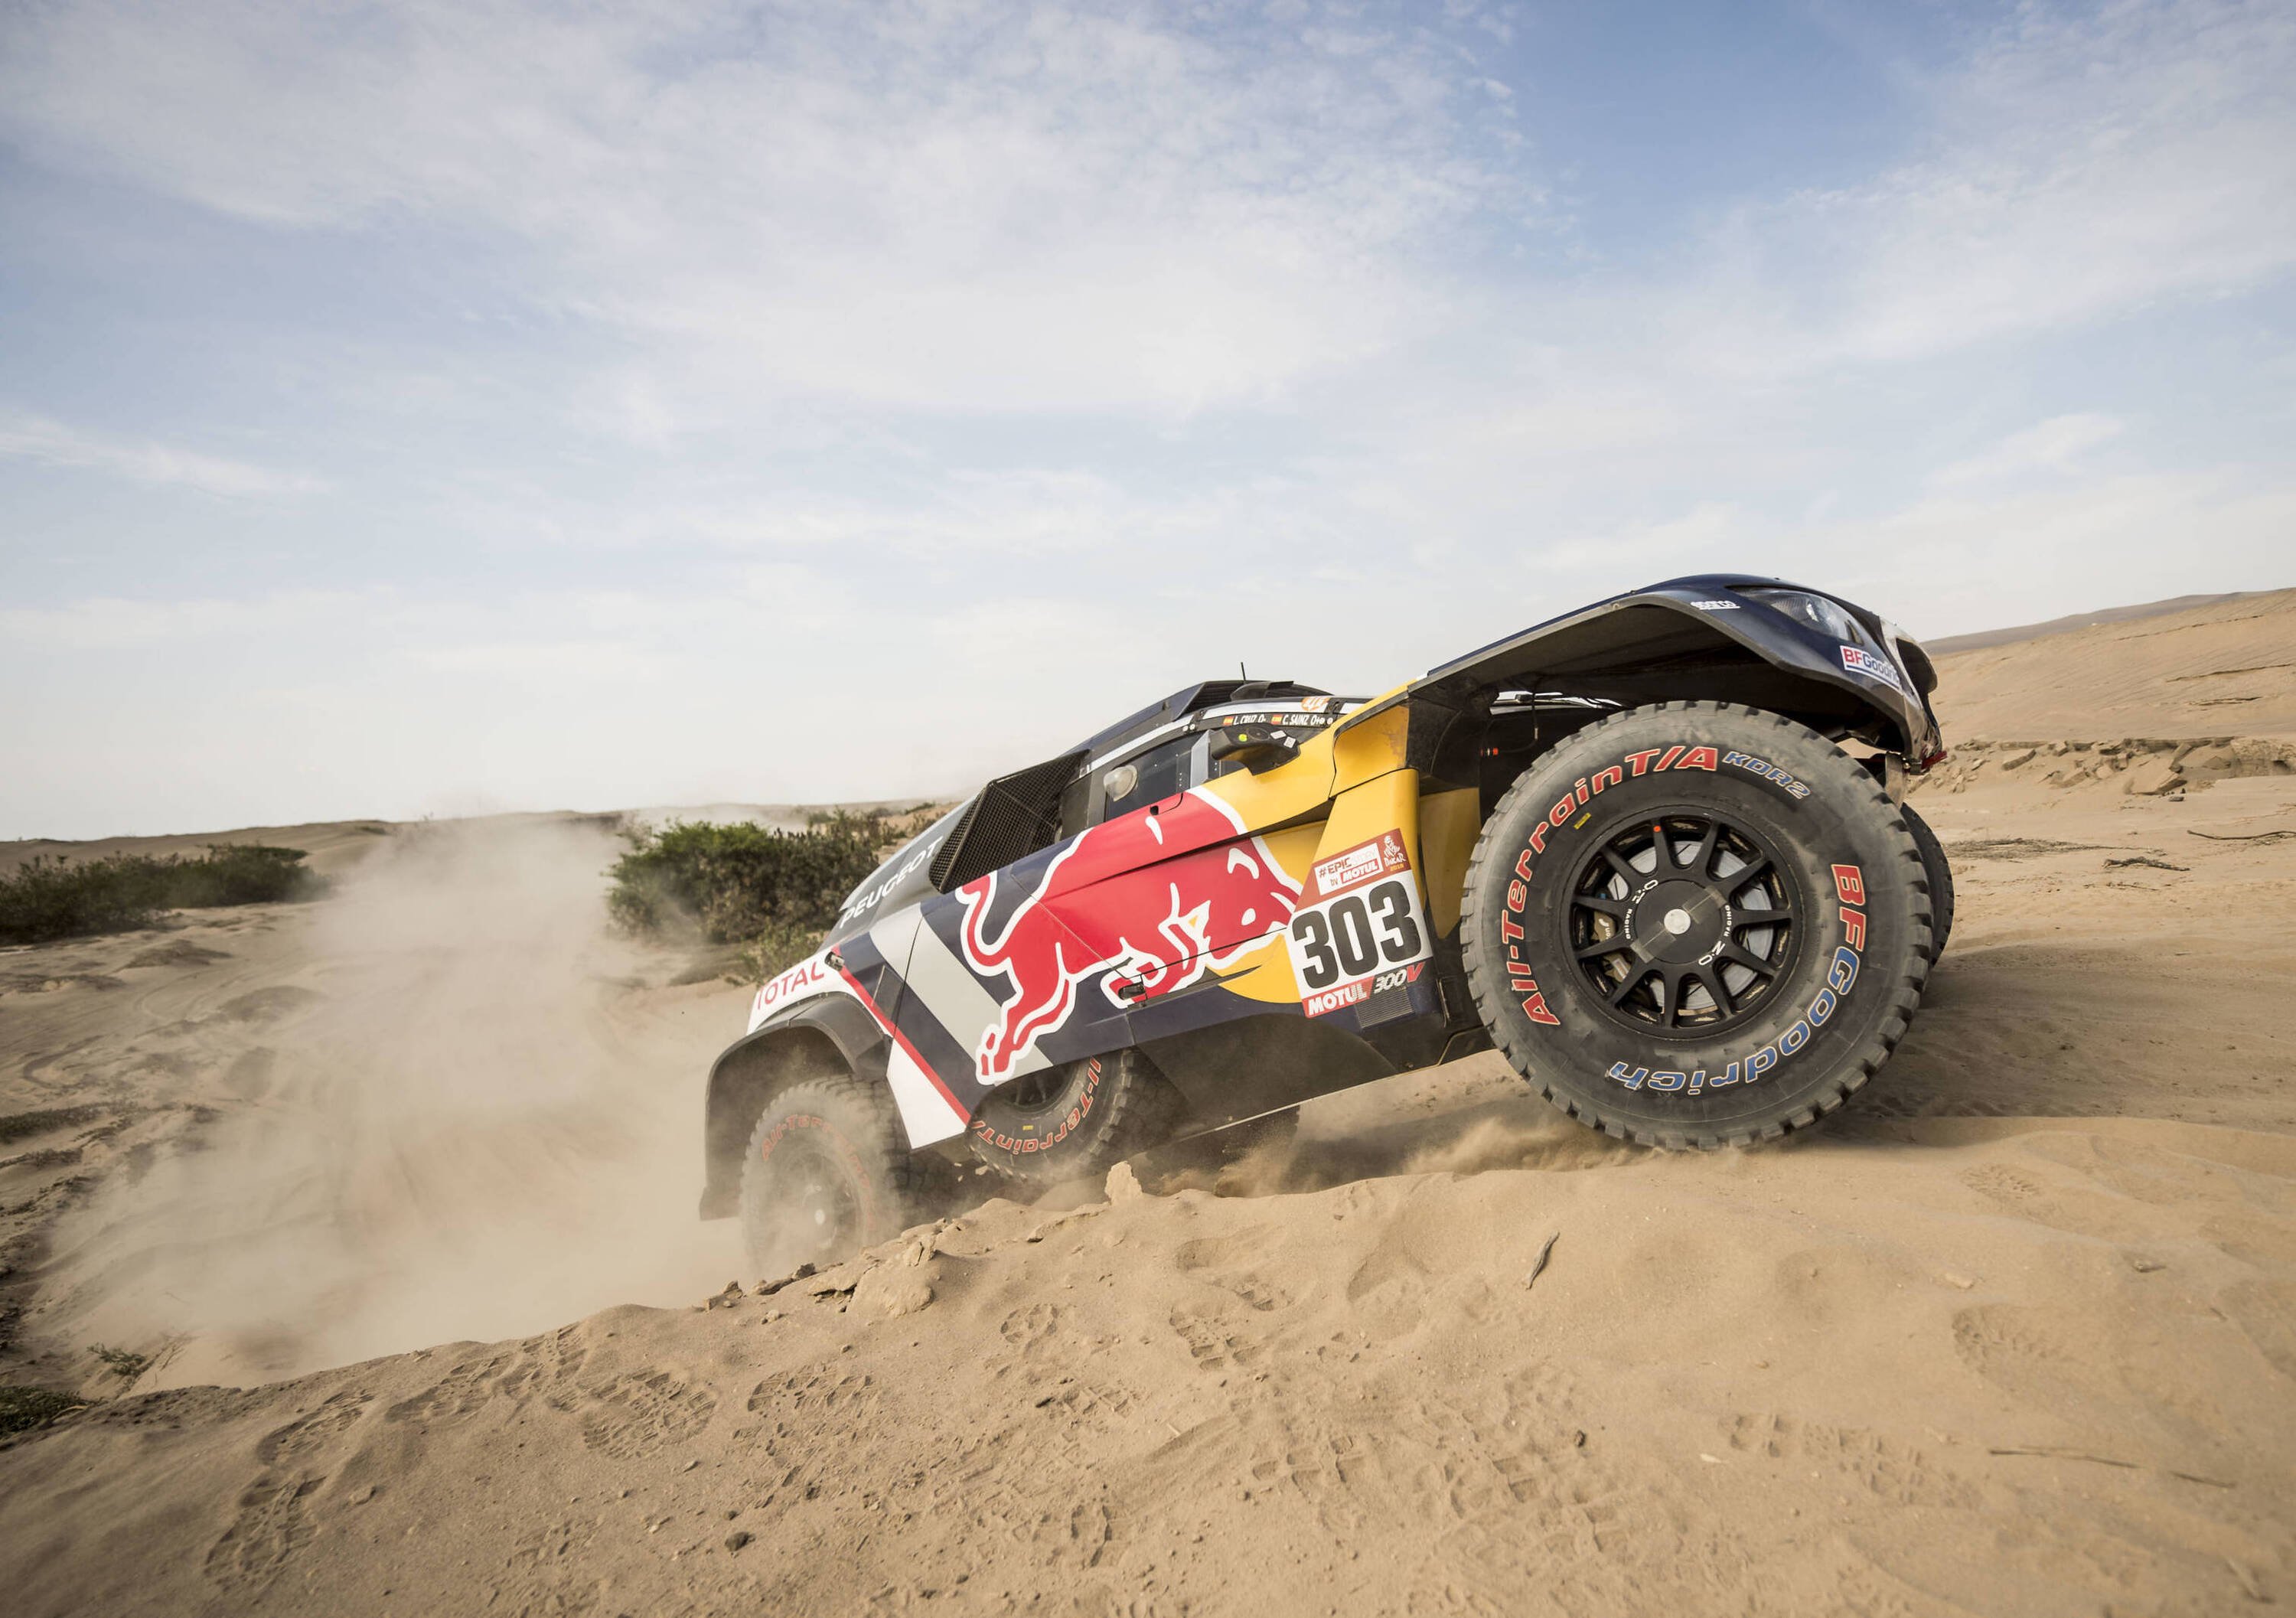 Dakar 2018 Peugeot. Bis di Sainz, Peterhansel in ritardo. El Matador nuovo Leader